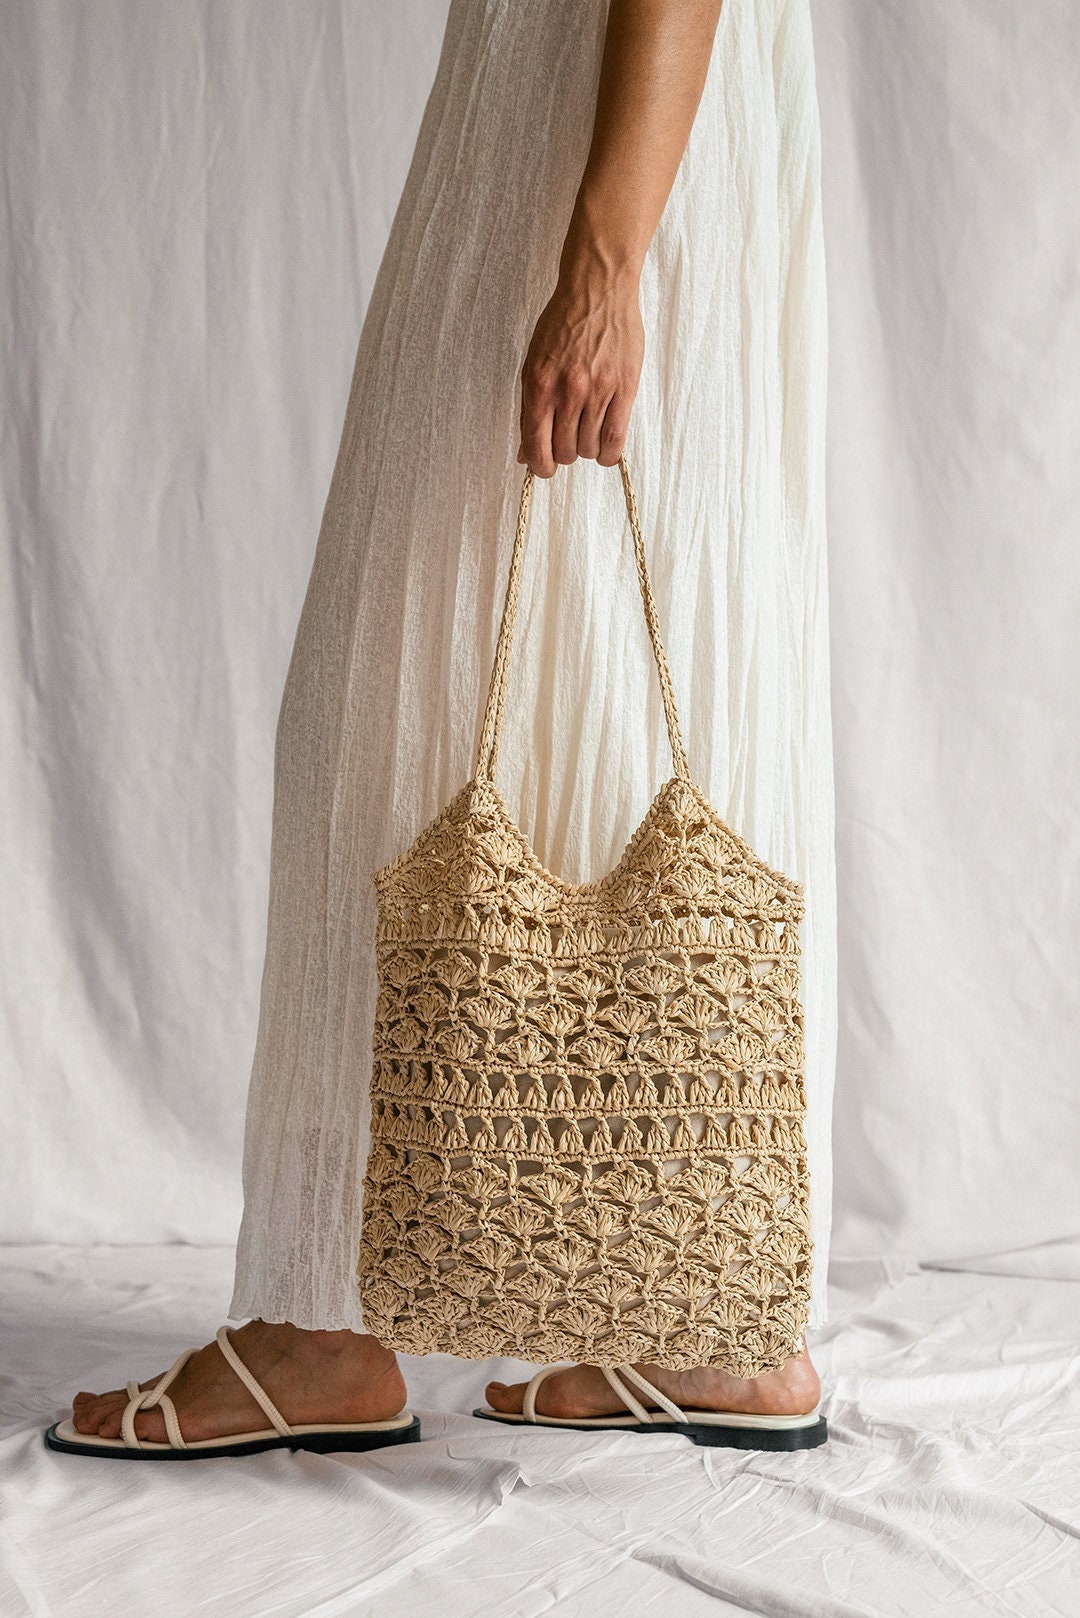 Crochet Raffia Tote Bag in Natural, Summer Tote Bag, Straw Mesh Bag ...